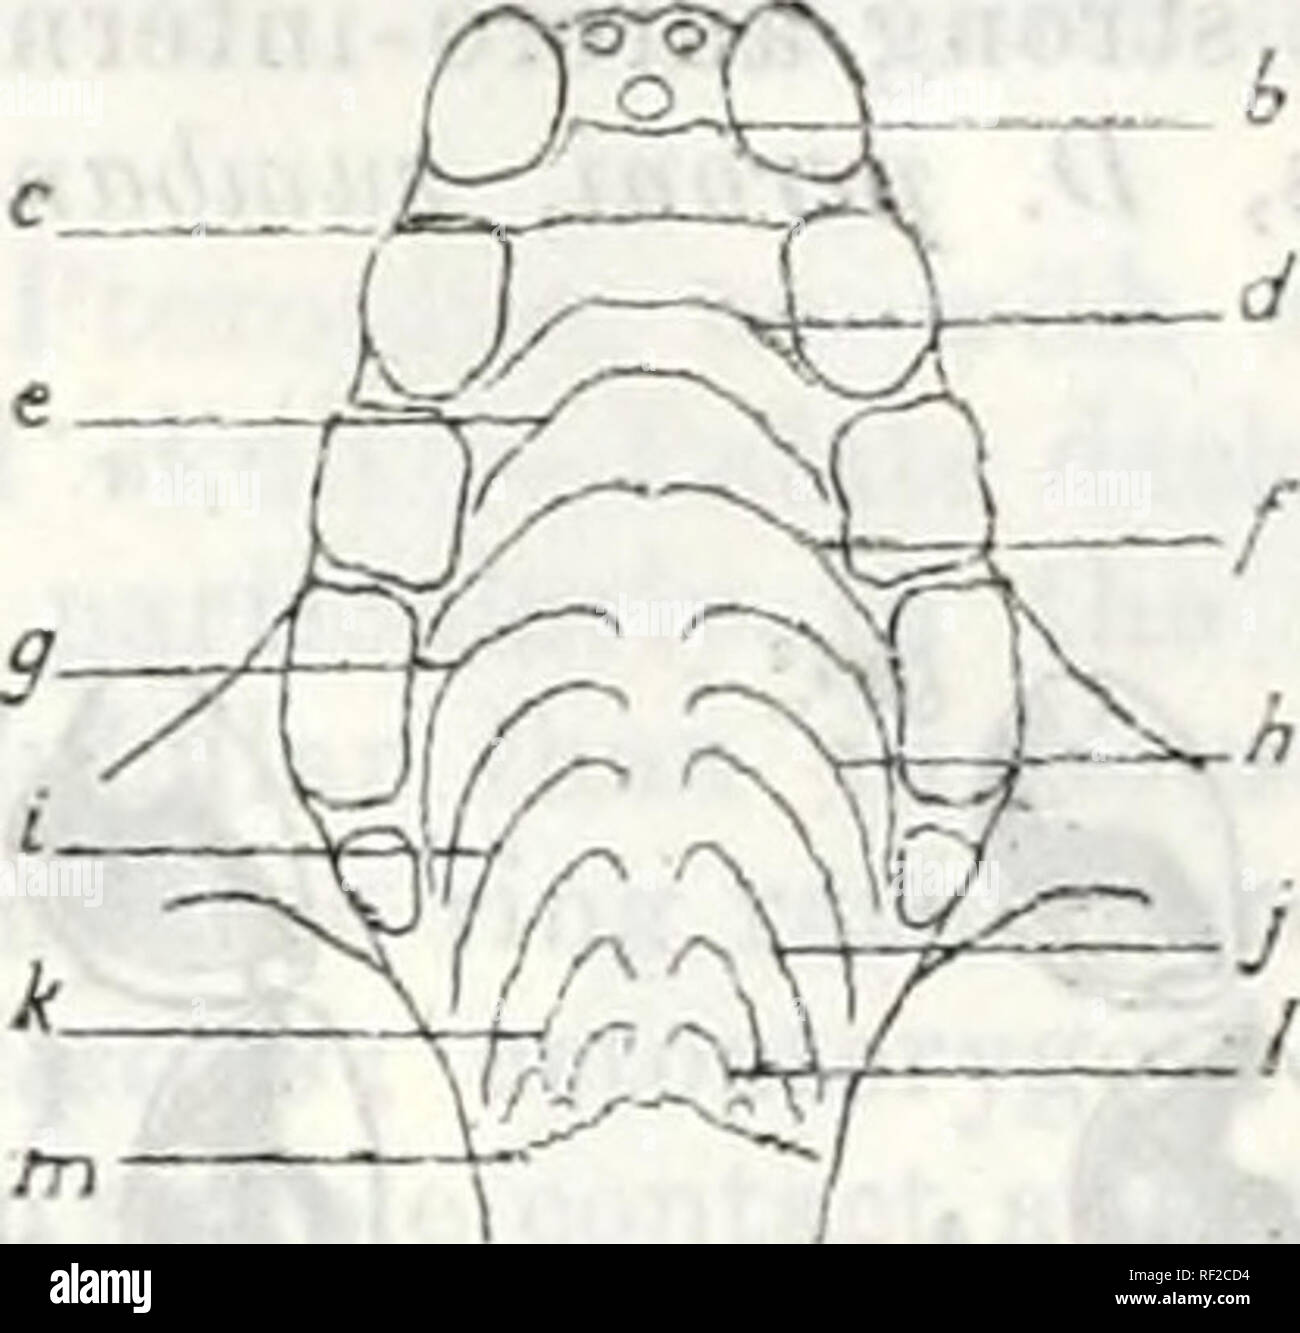 Katalog der Chiroptera in der Sammlung... Museum. . Ein s. Abb. 26.-  Geschmack - Grate. A, Pi^rojnis hypuineUnius ionieni (94.7.14.3), für  eomparisun ivitb B, Dubaimia exoleta (97.1.3.18). Die "wahrscheinlichen  houiologiea der